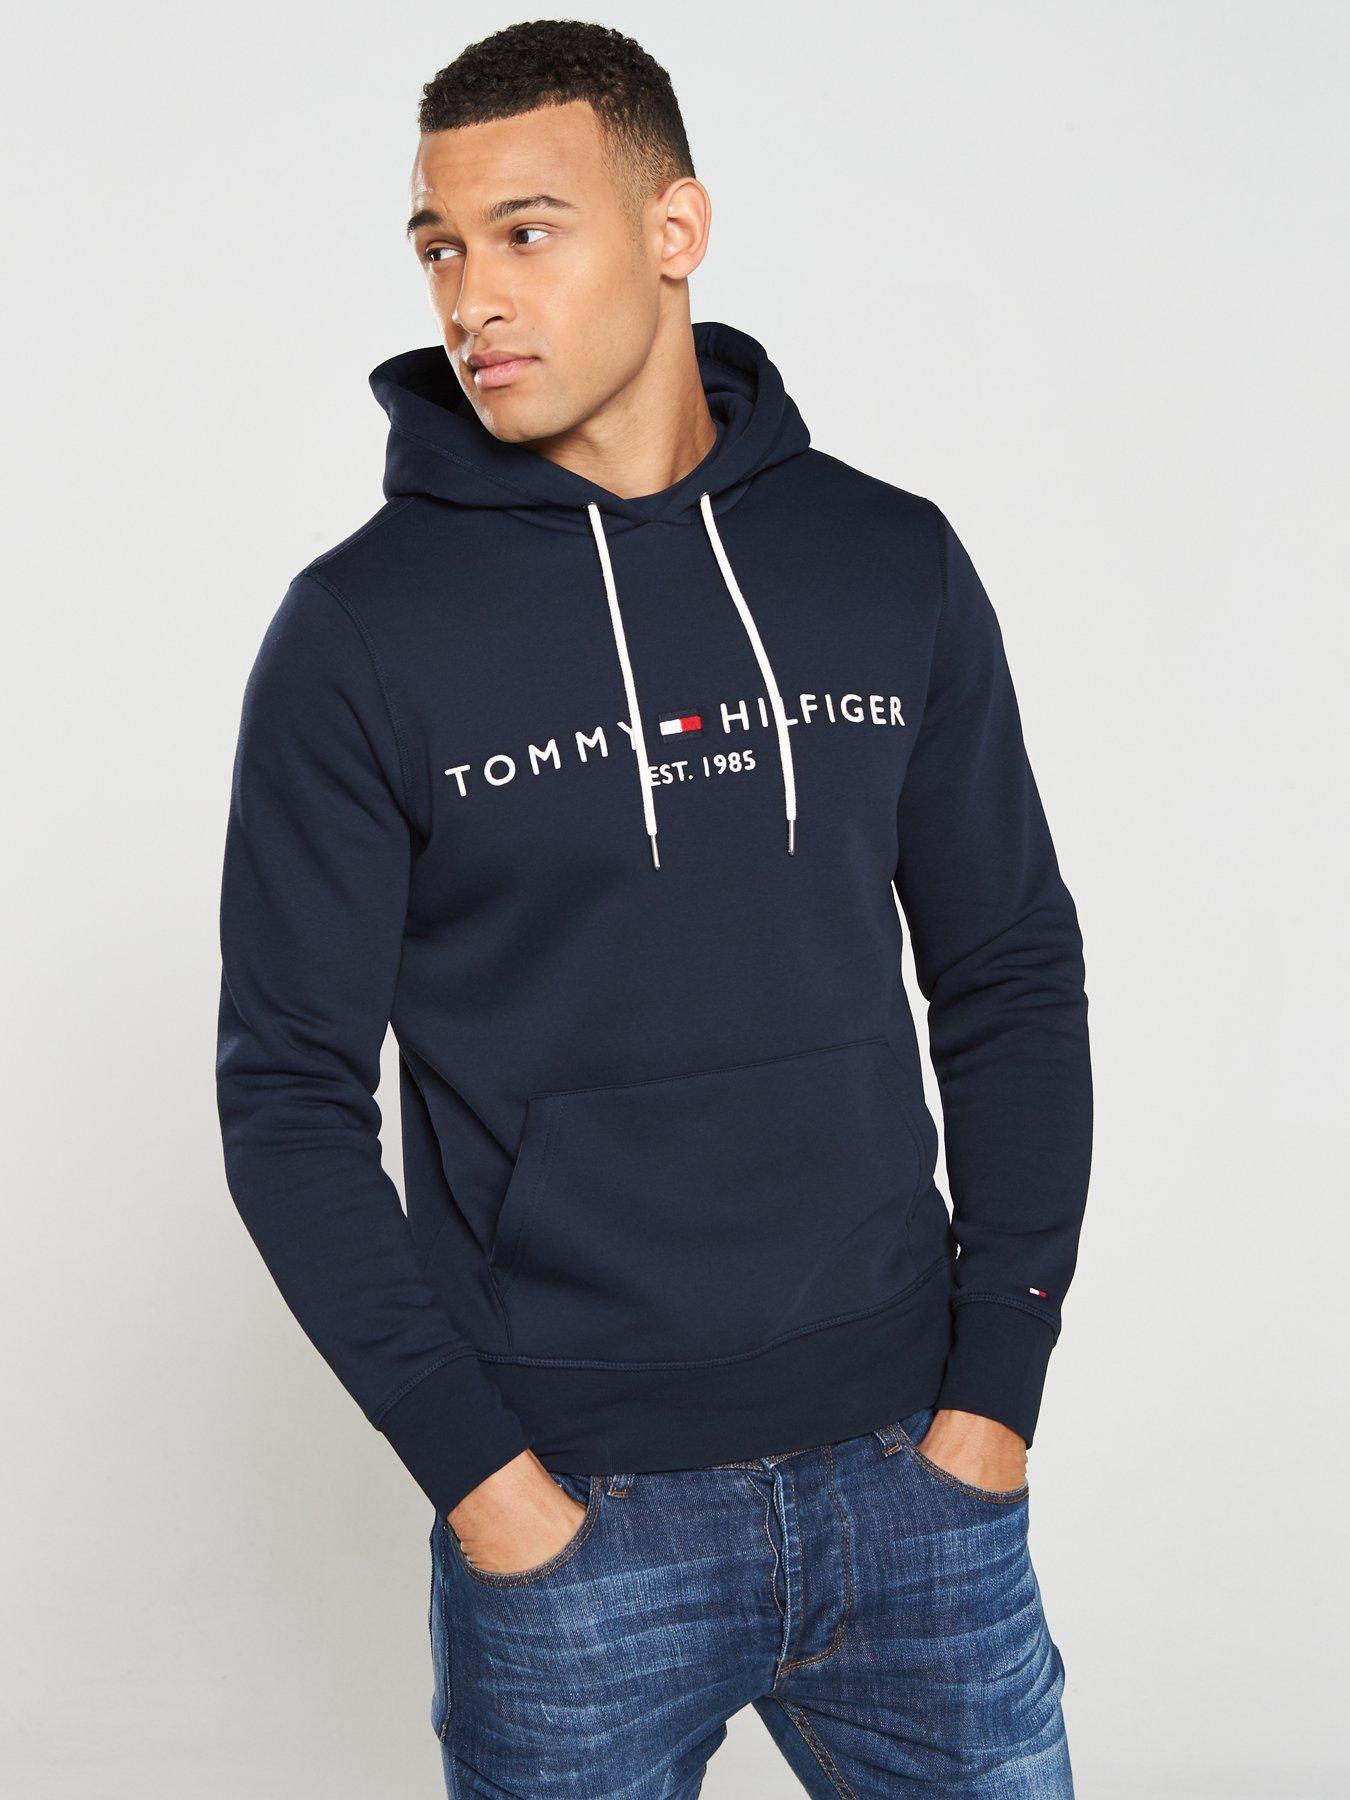 tommy hilfiger blue hoodie mens